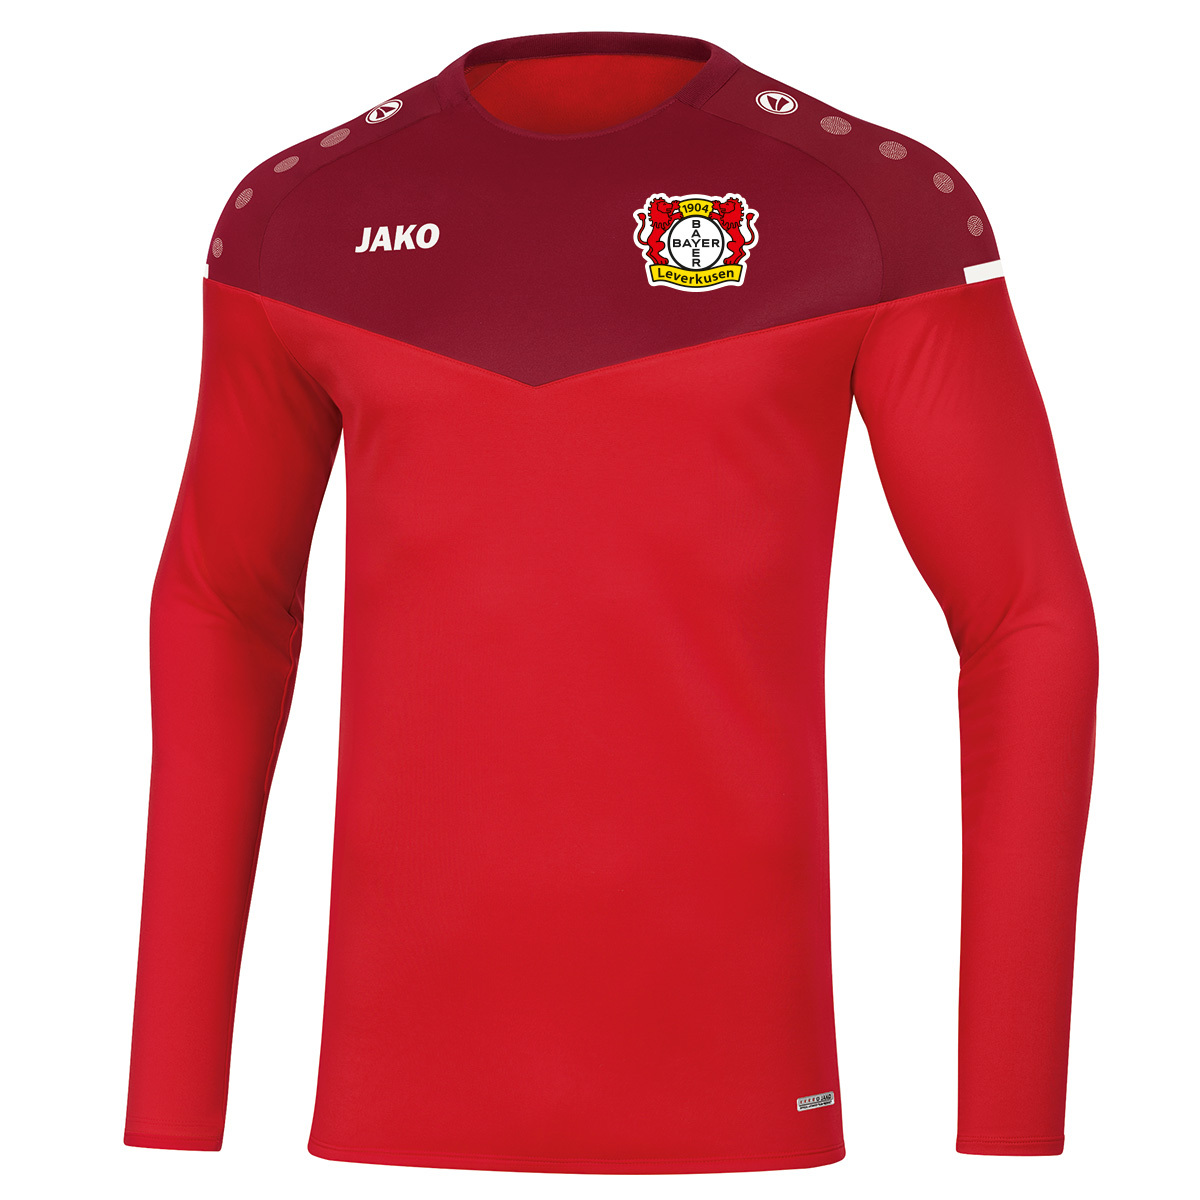 JAKO Bayer 04 Leverkusen Premium T-Shirt 